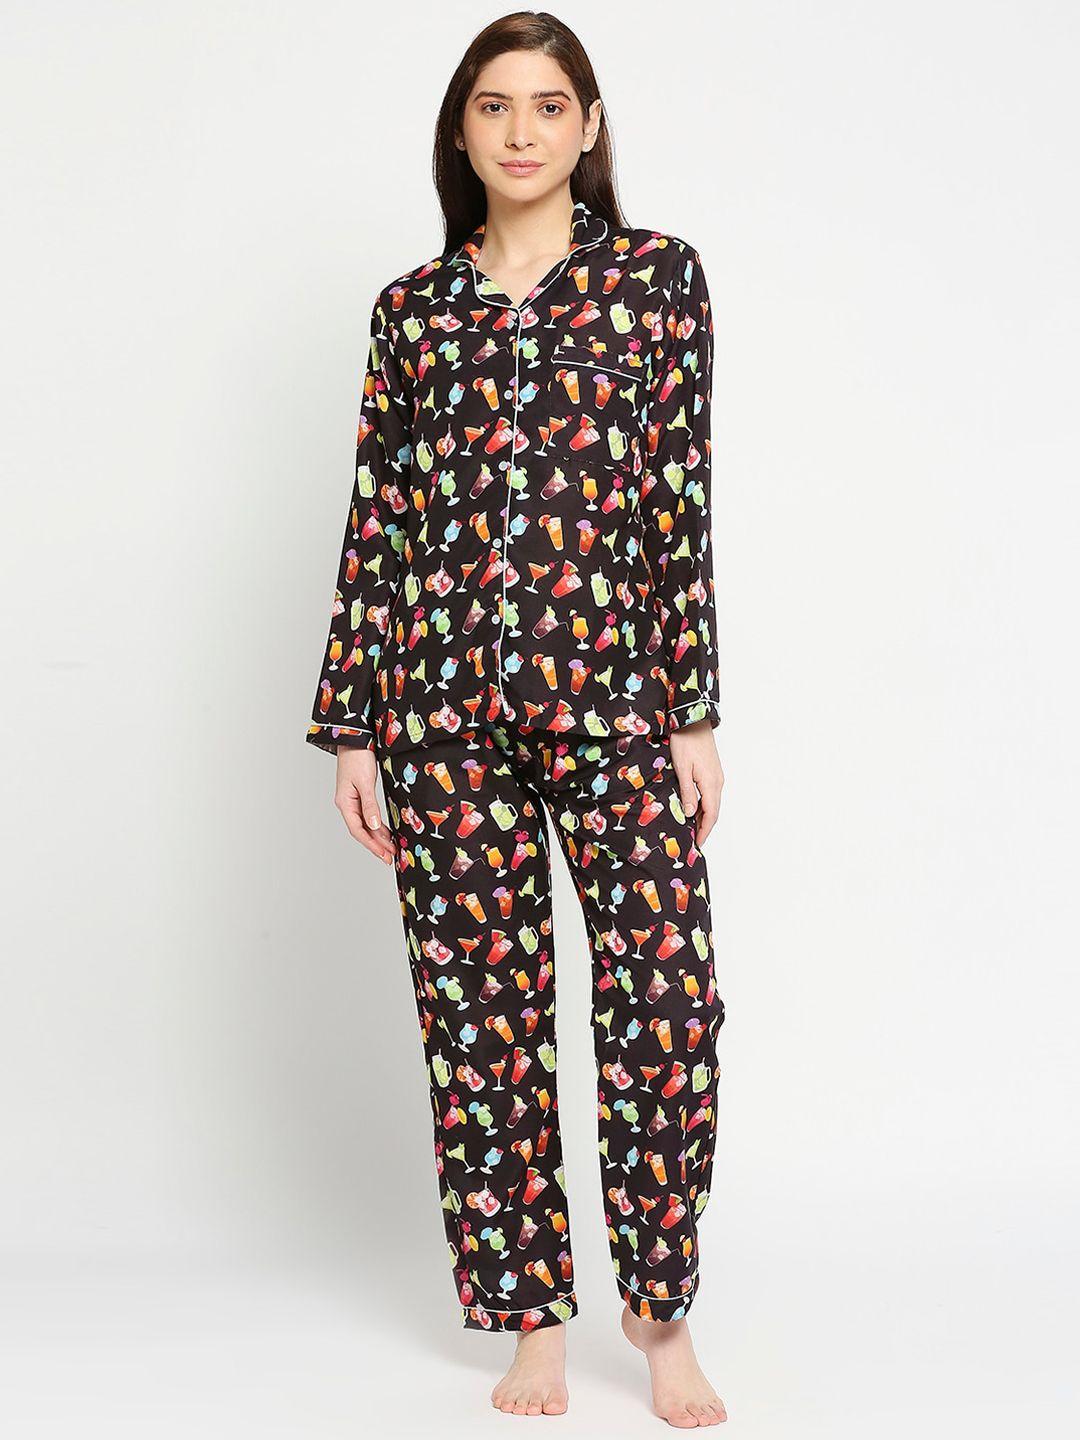 pyjama-party-women-pure-cotton-printed-night-suit